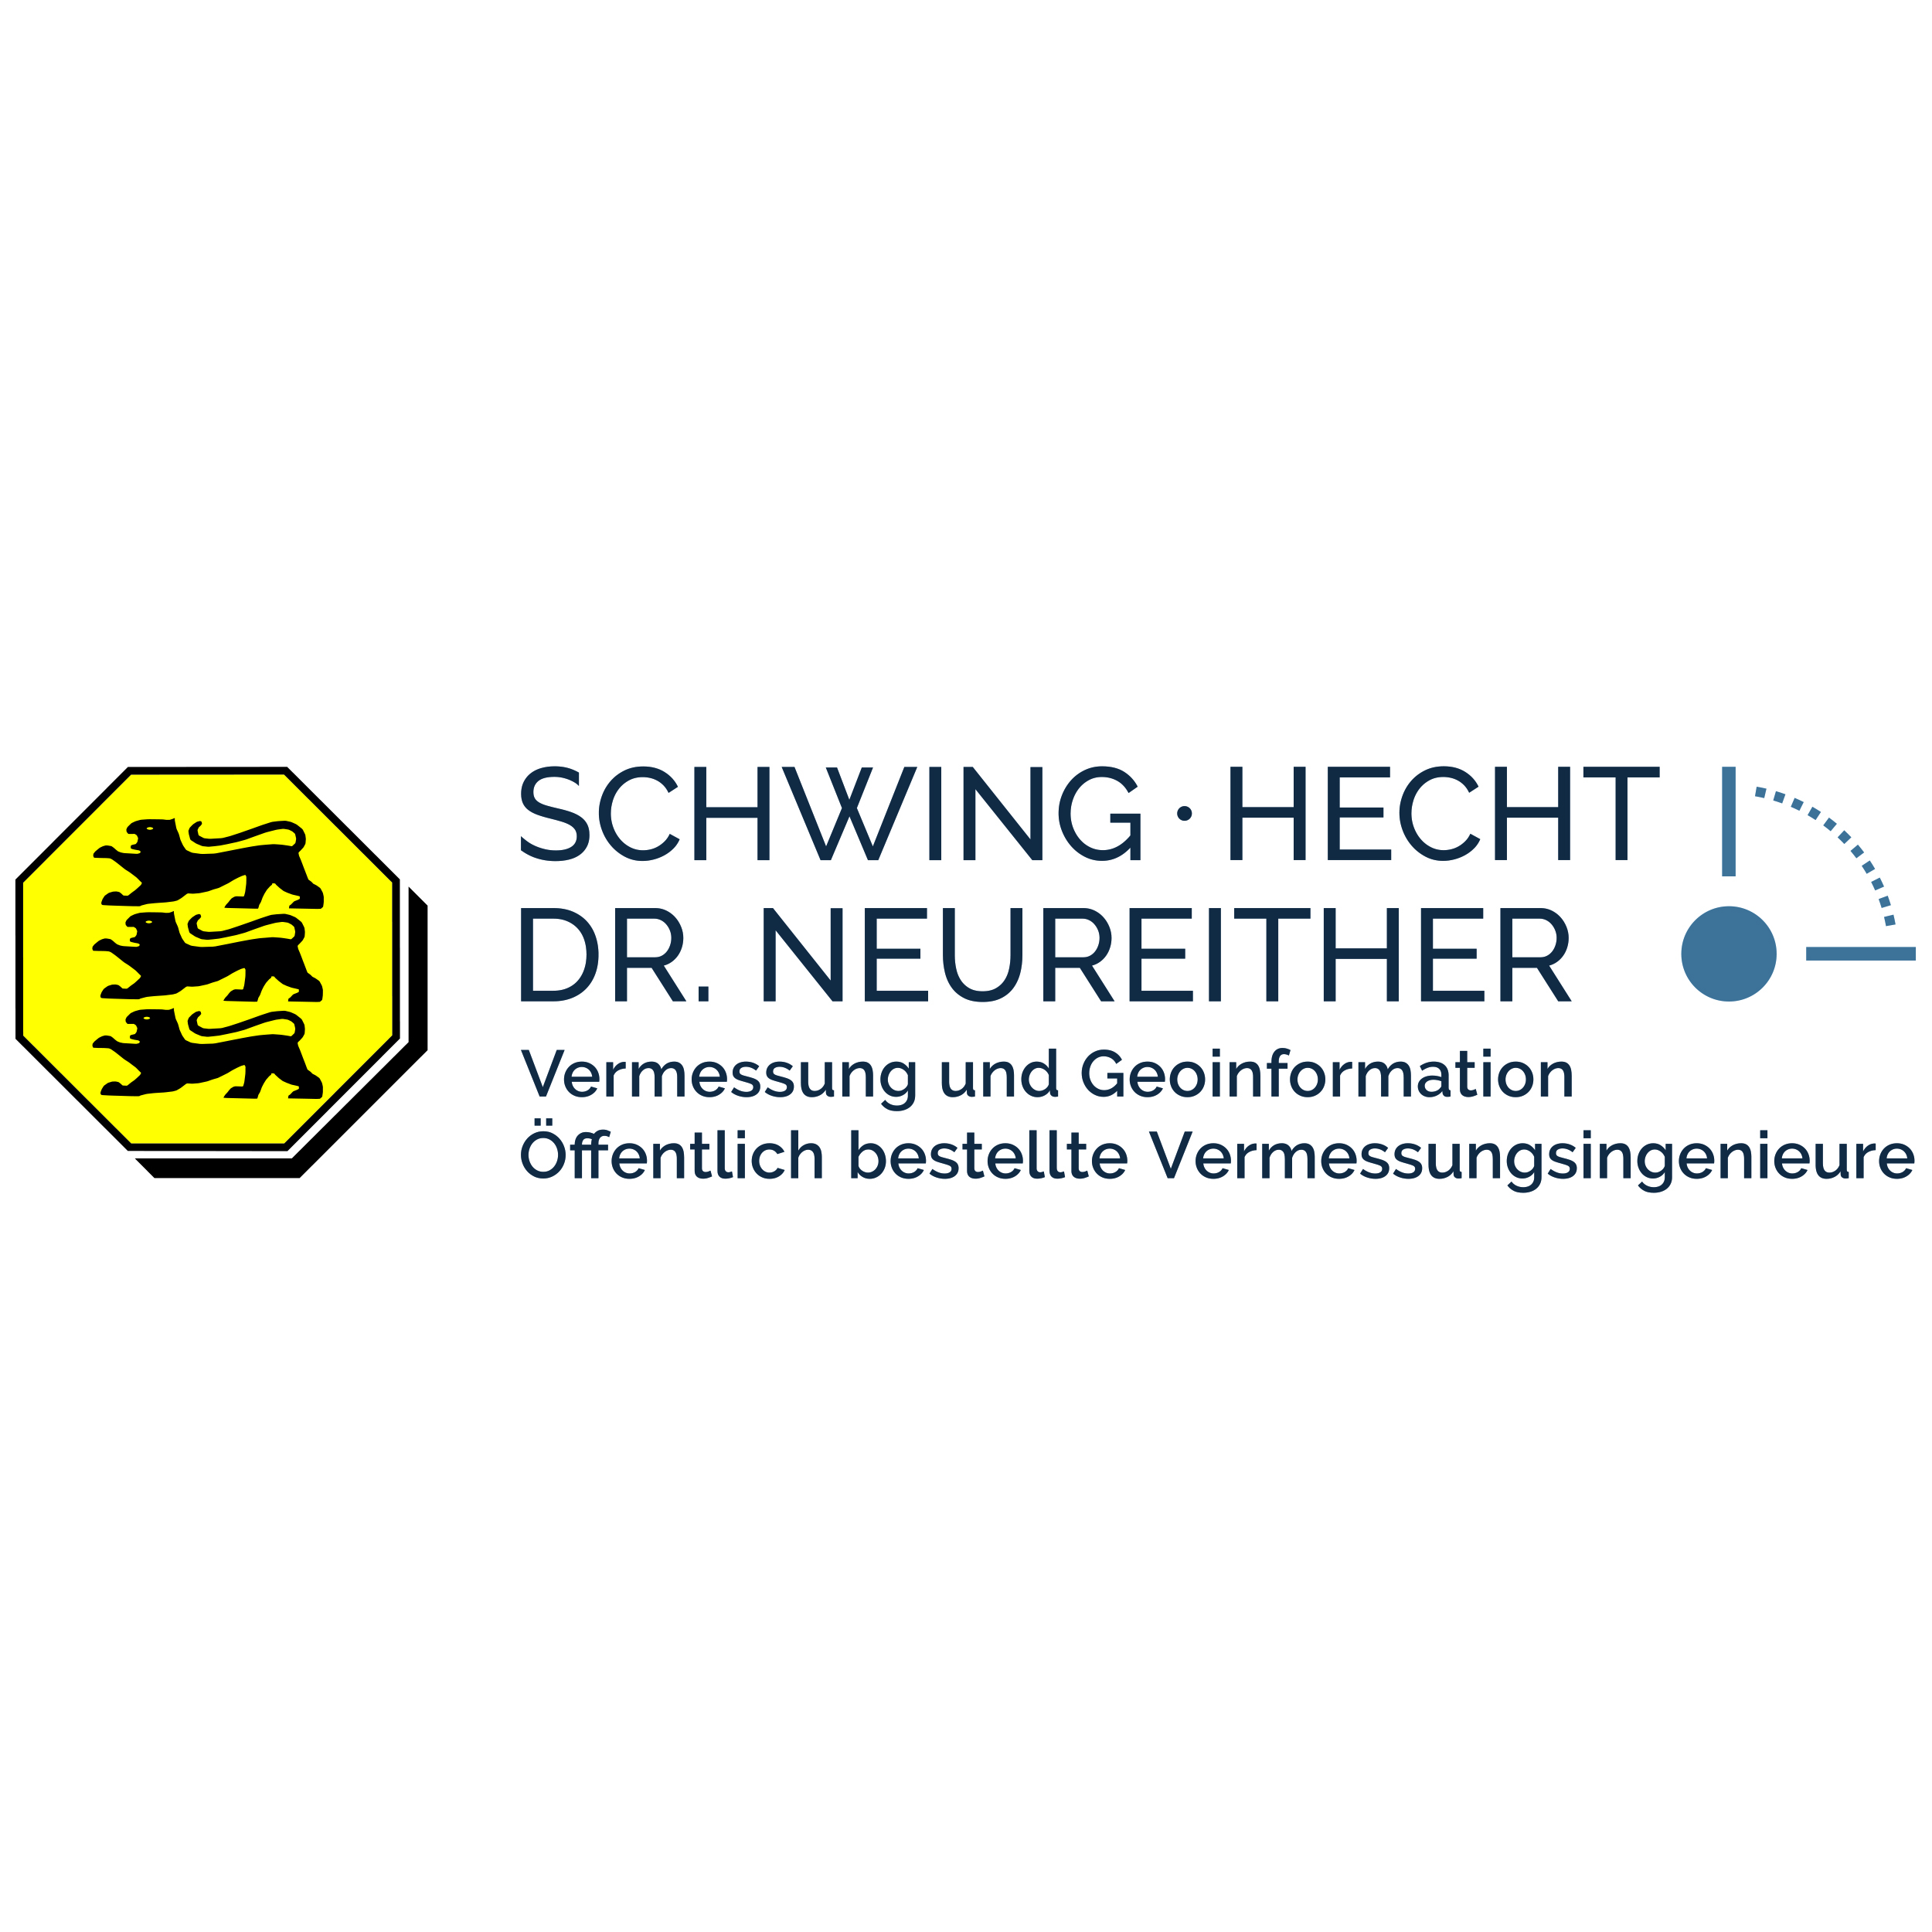 Vermessungsbüro Schwing Hecht Dr. Neureither in Karlsruhe